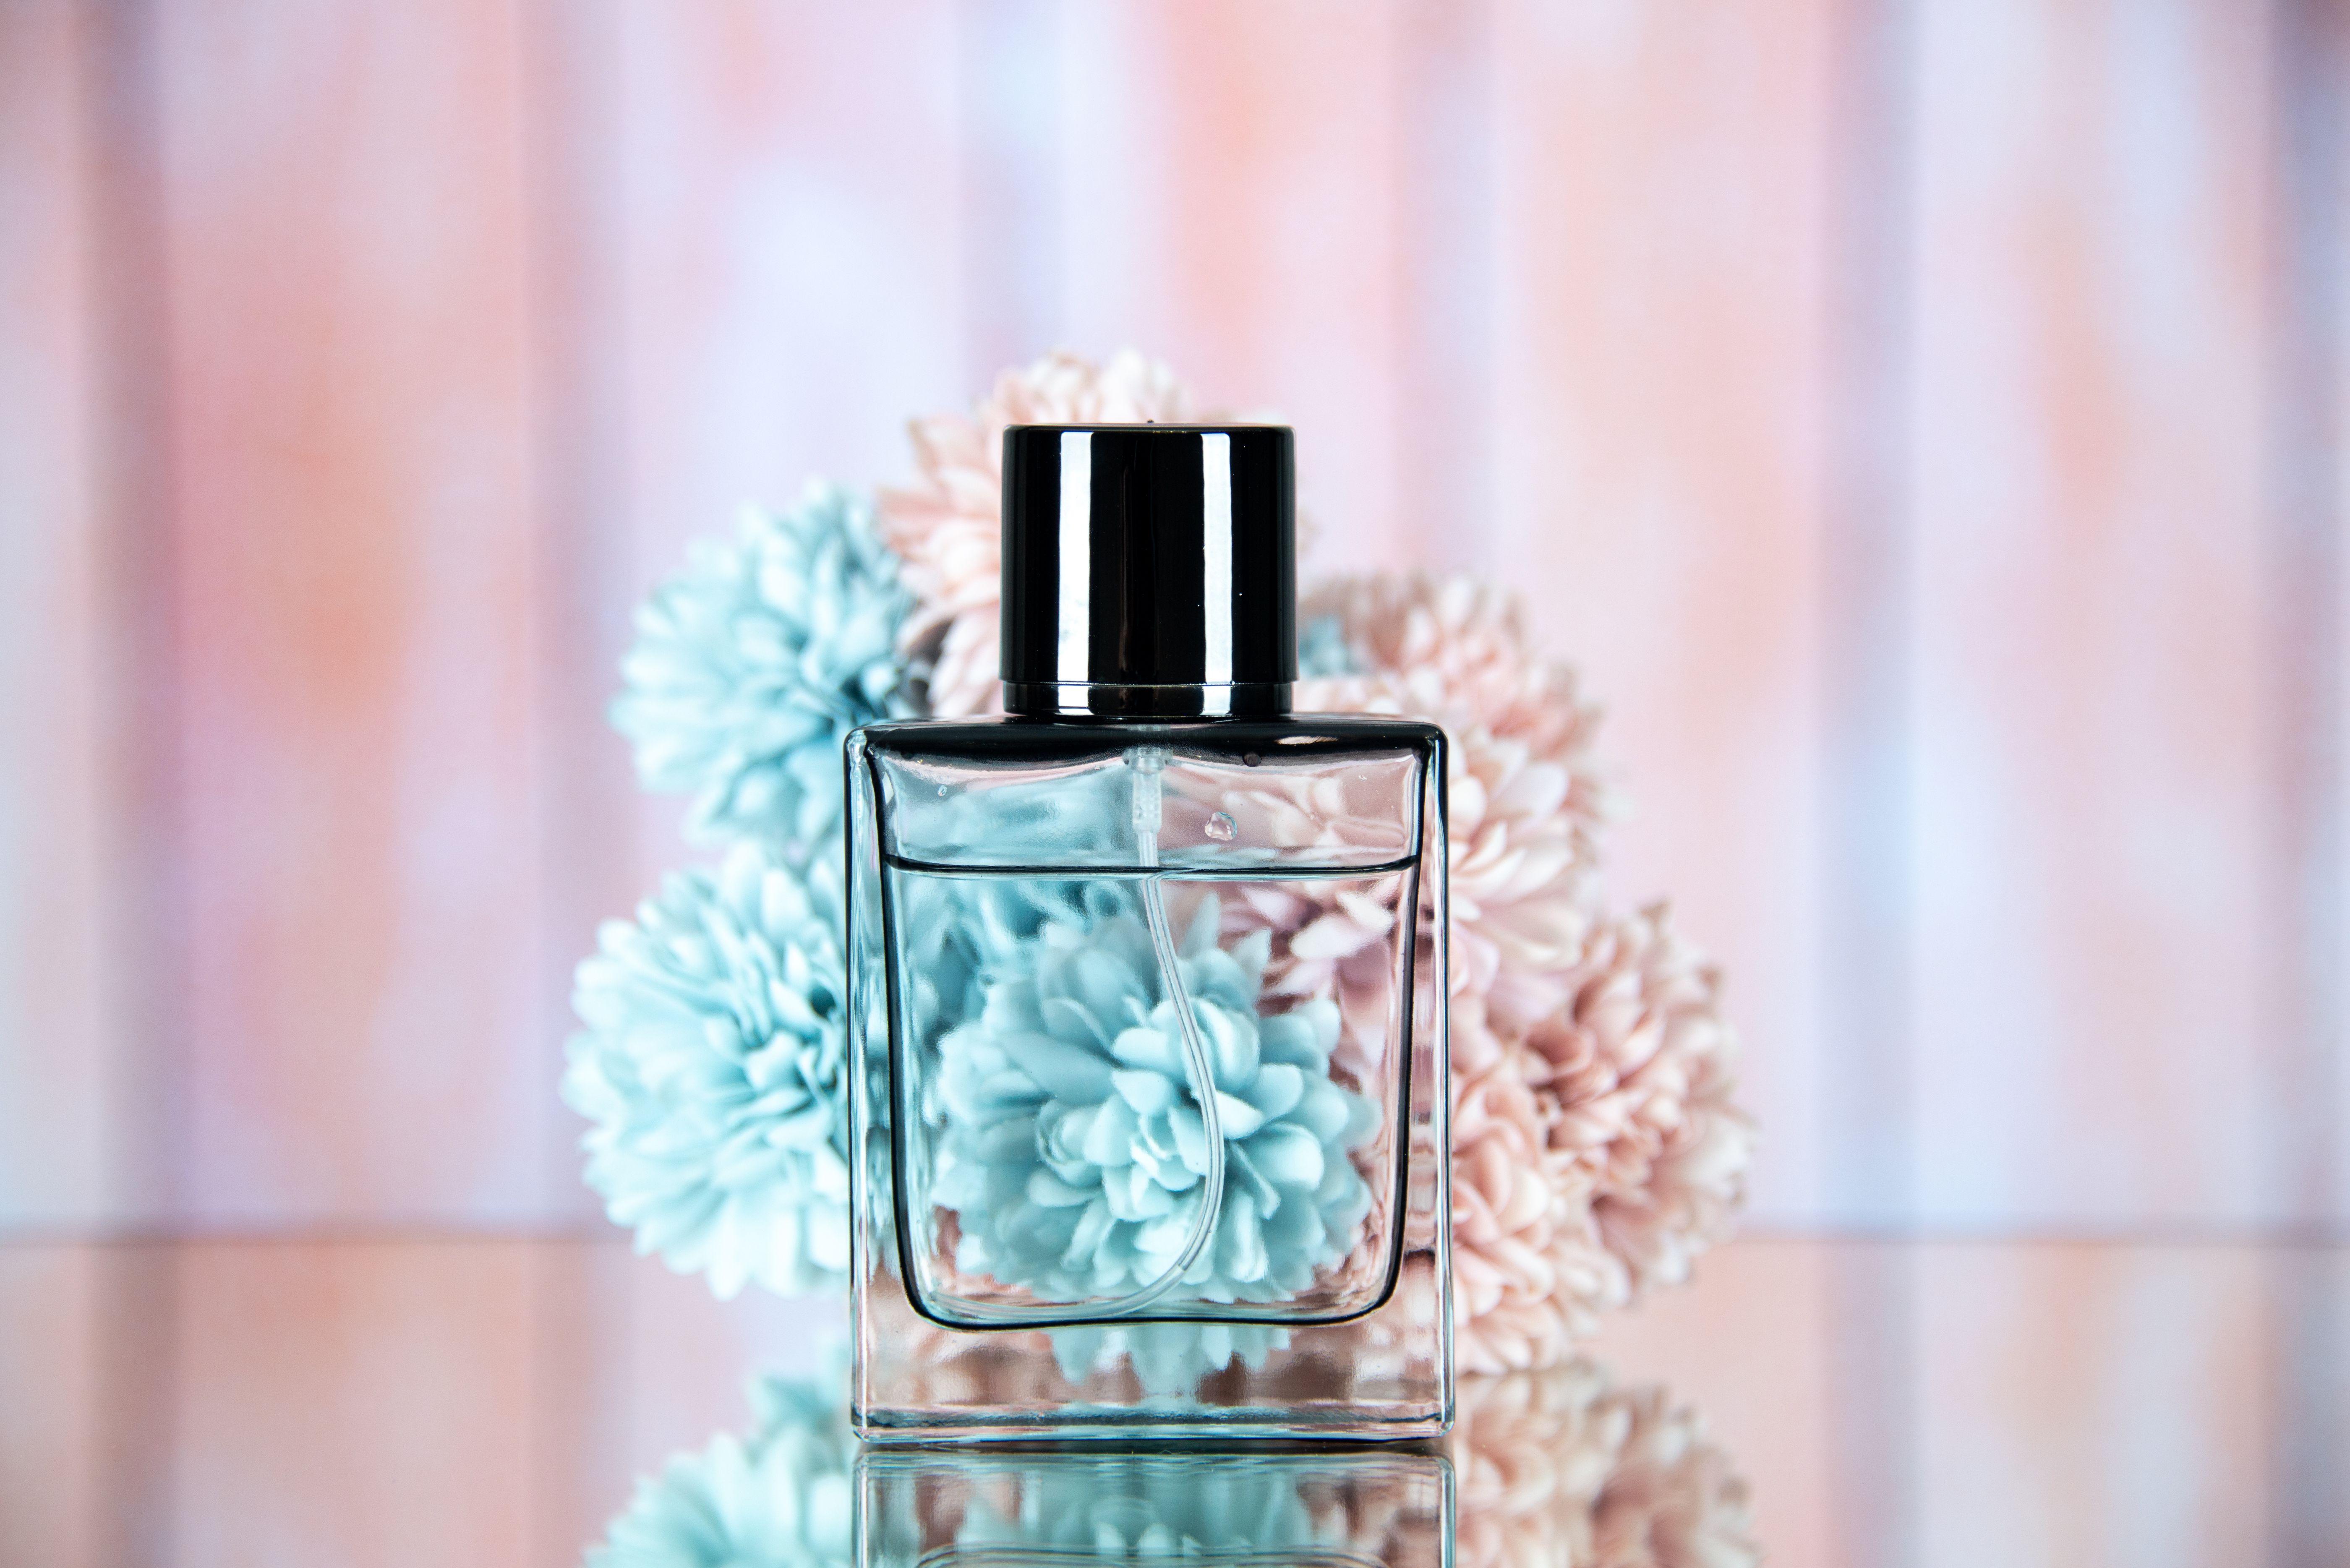 Выбор парфюма может многое рассказать о личности